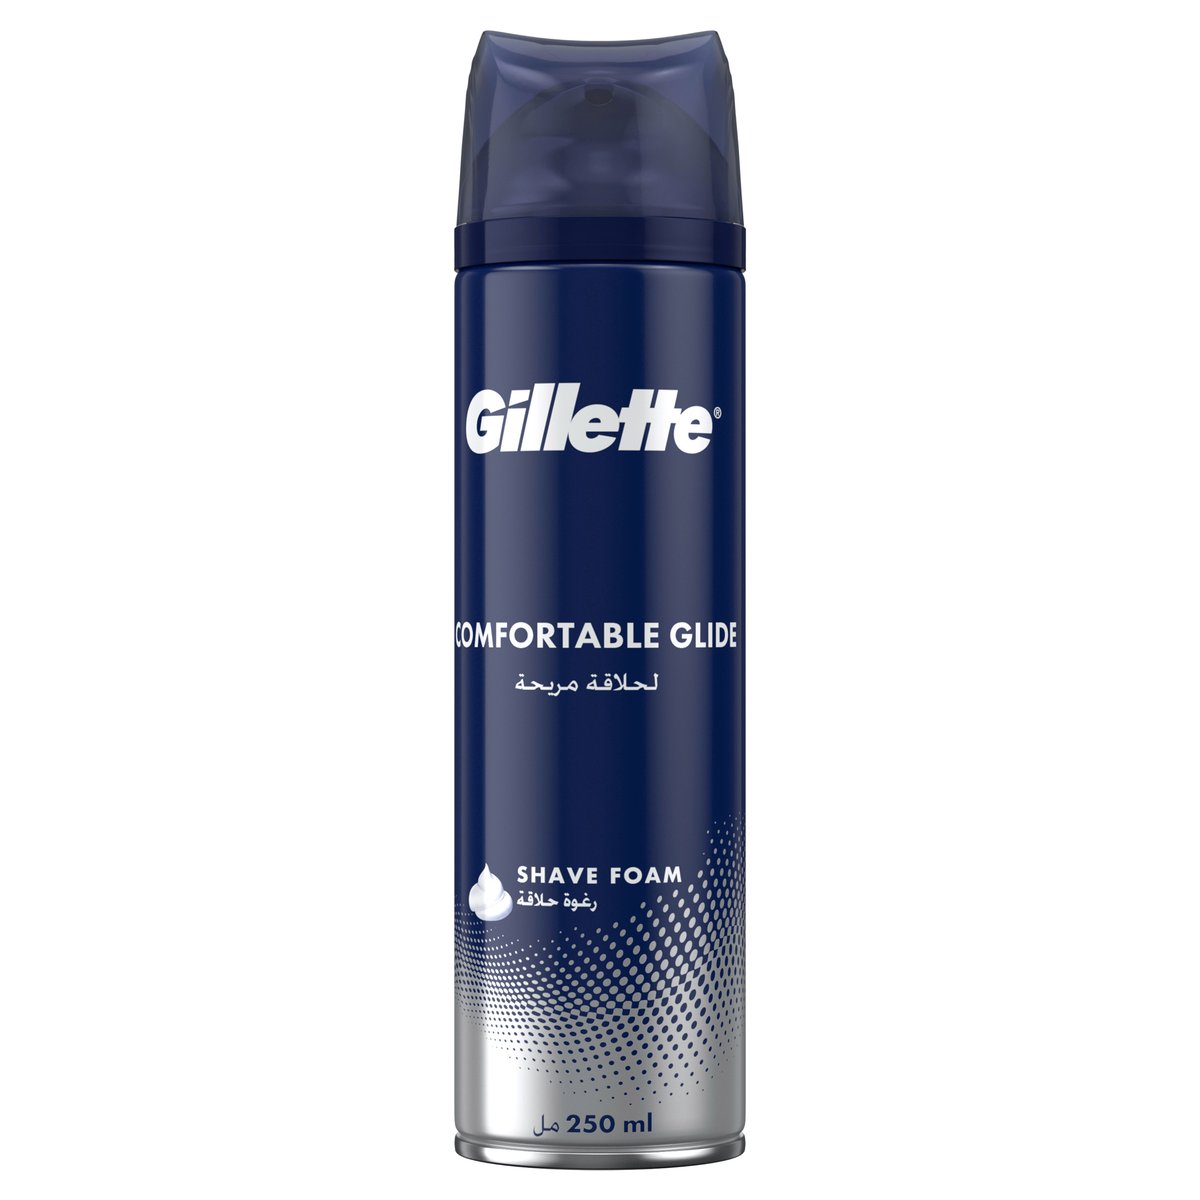 Gillette Shave Foam Comfortable Glide 250ml